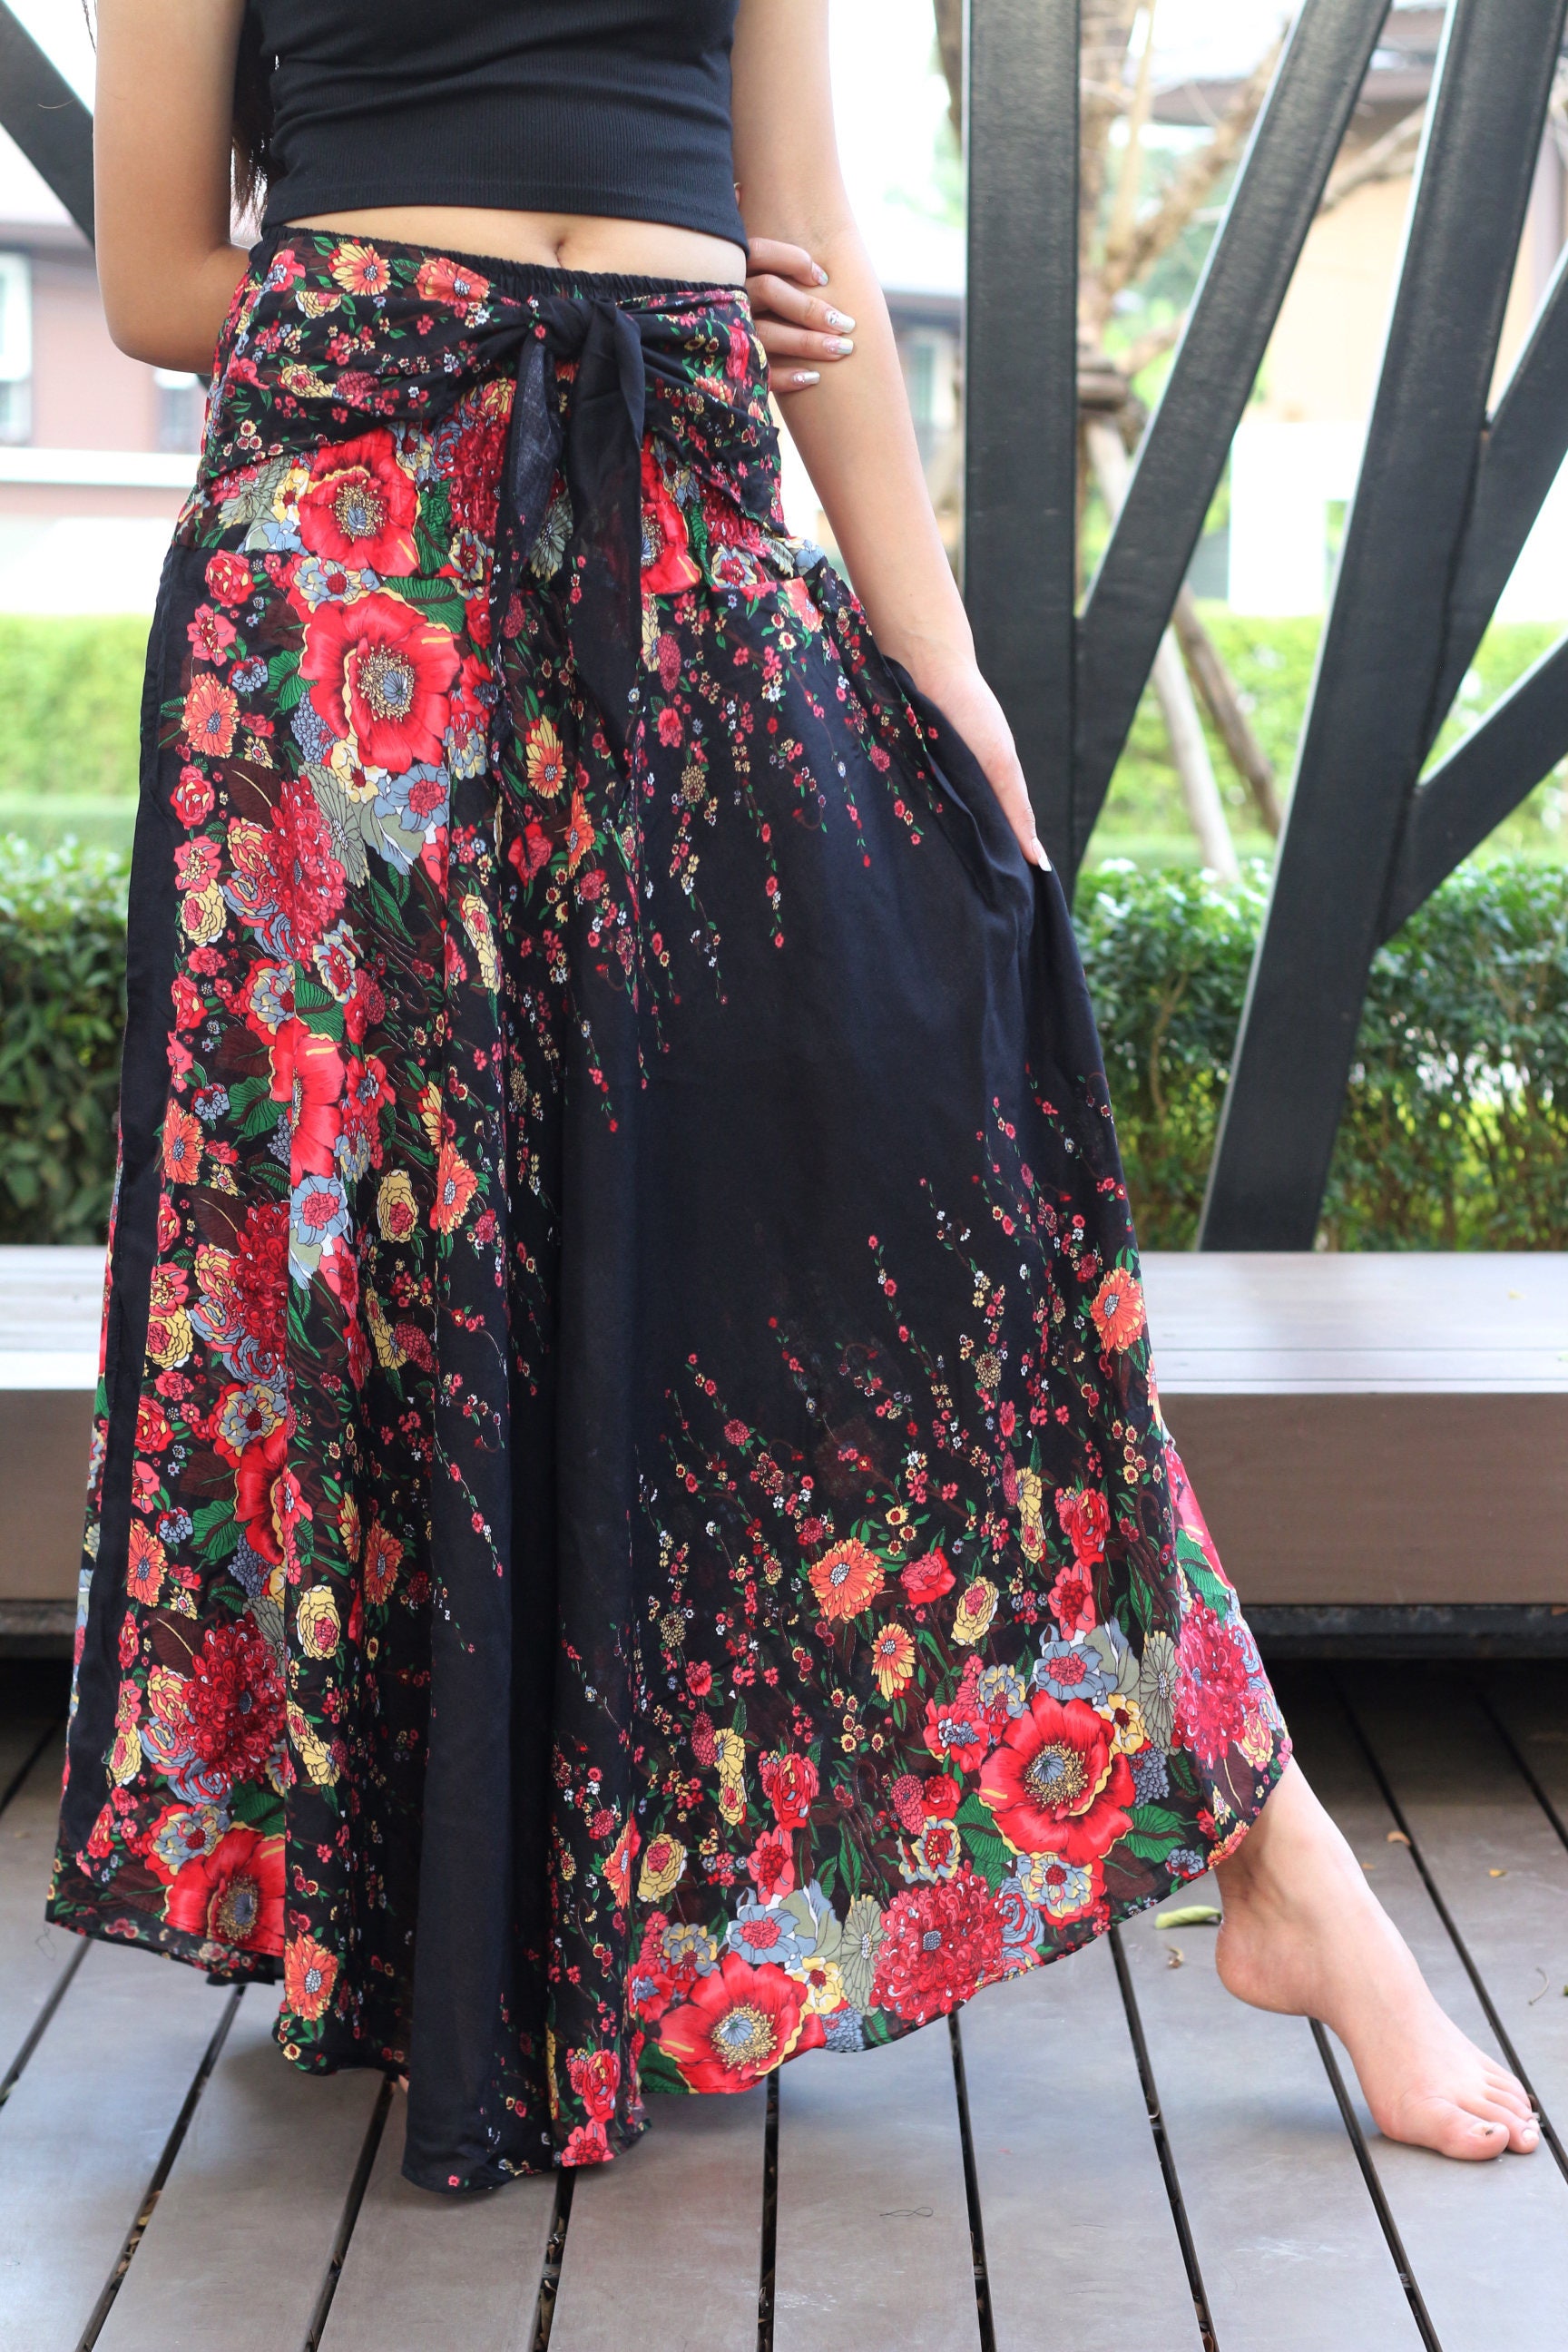 Flower Bohemian Skirt Maxi Skirt Long Skirt Beach Skirt Black | Etsy